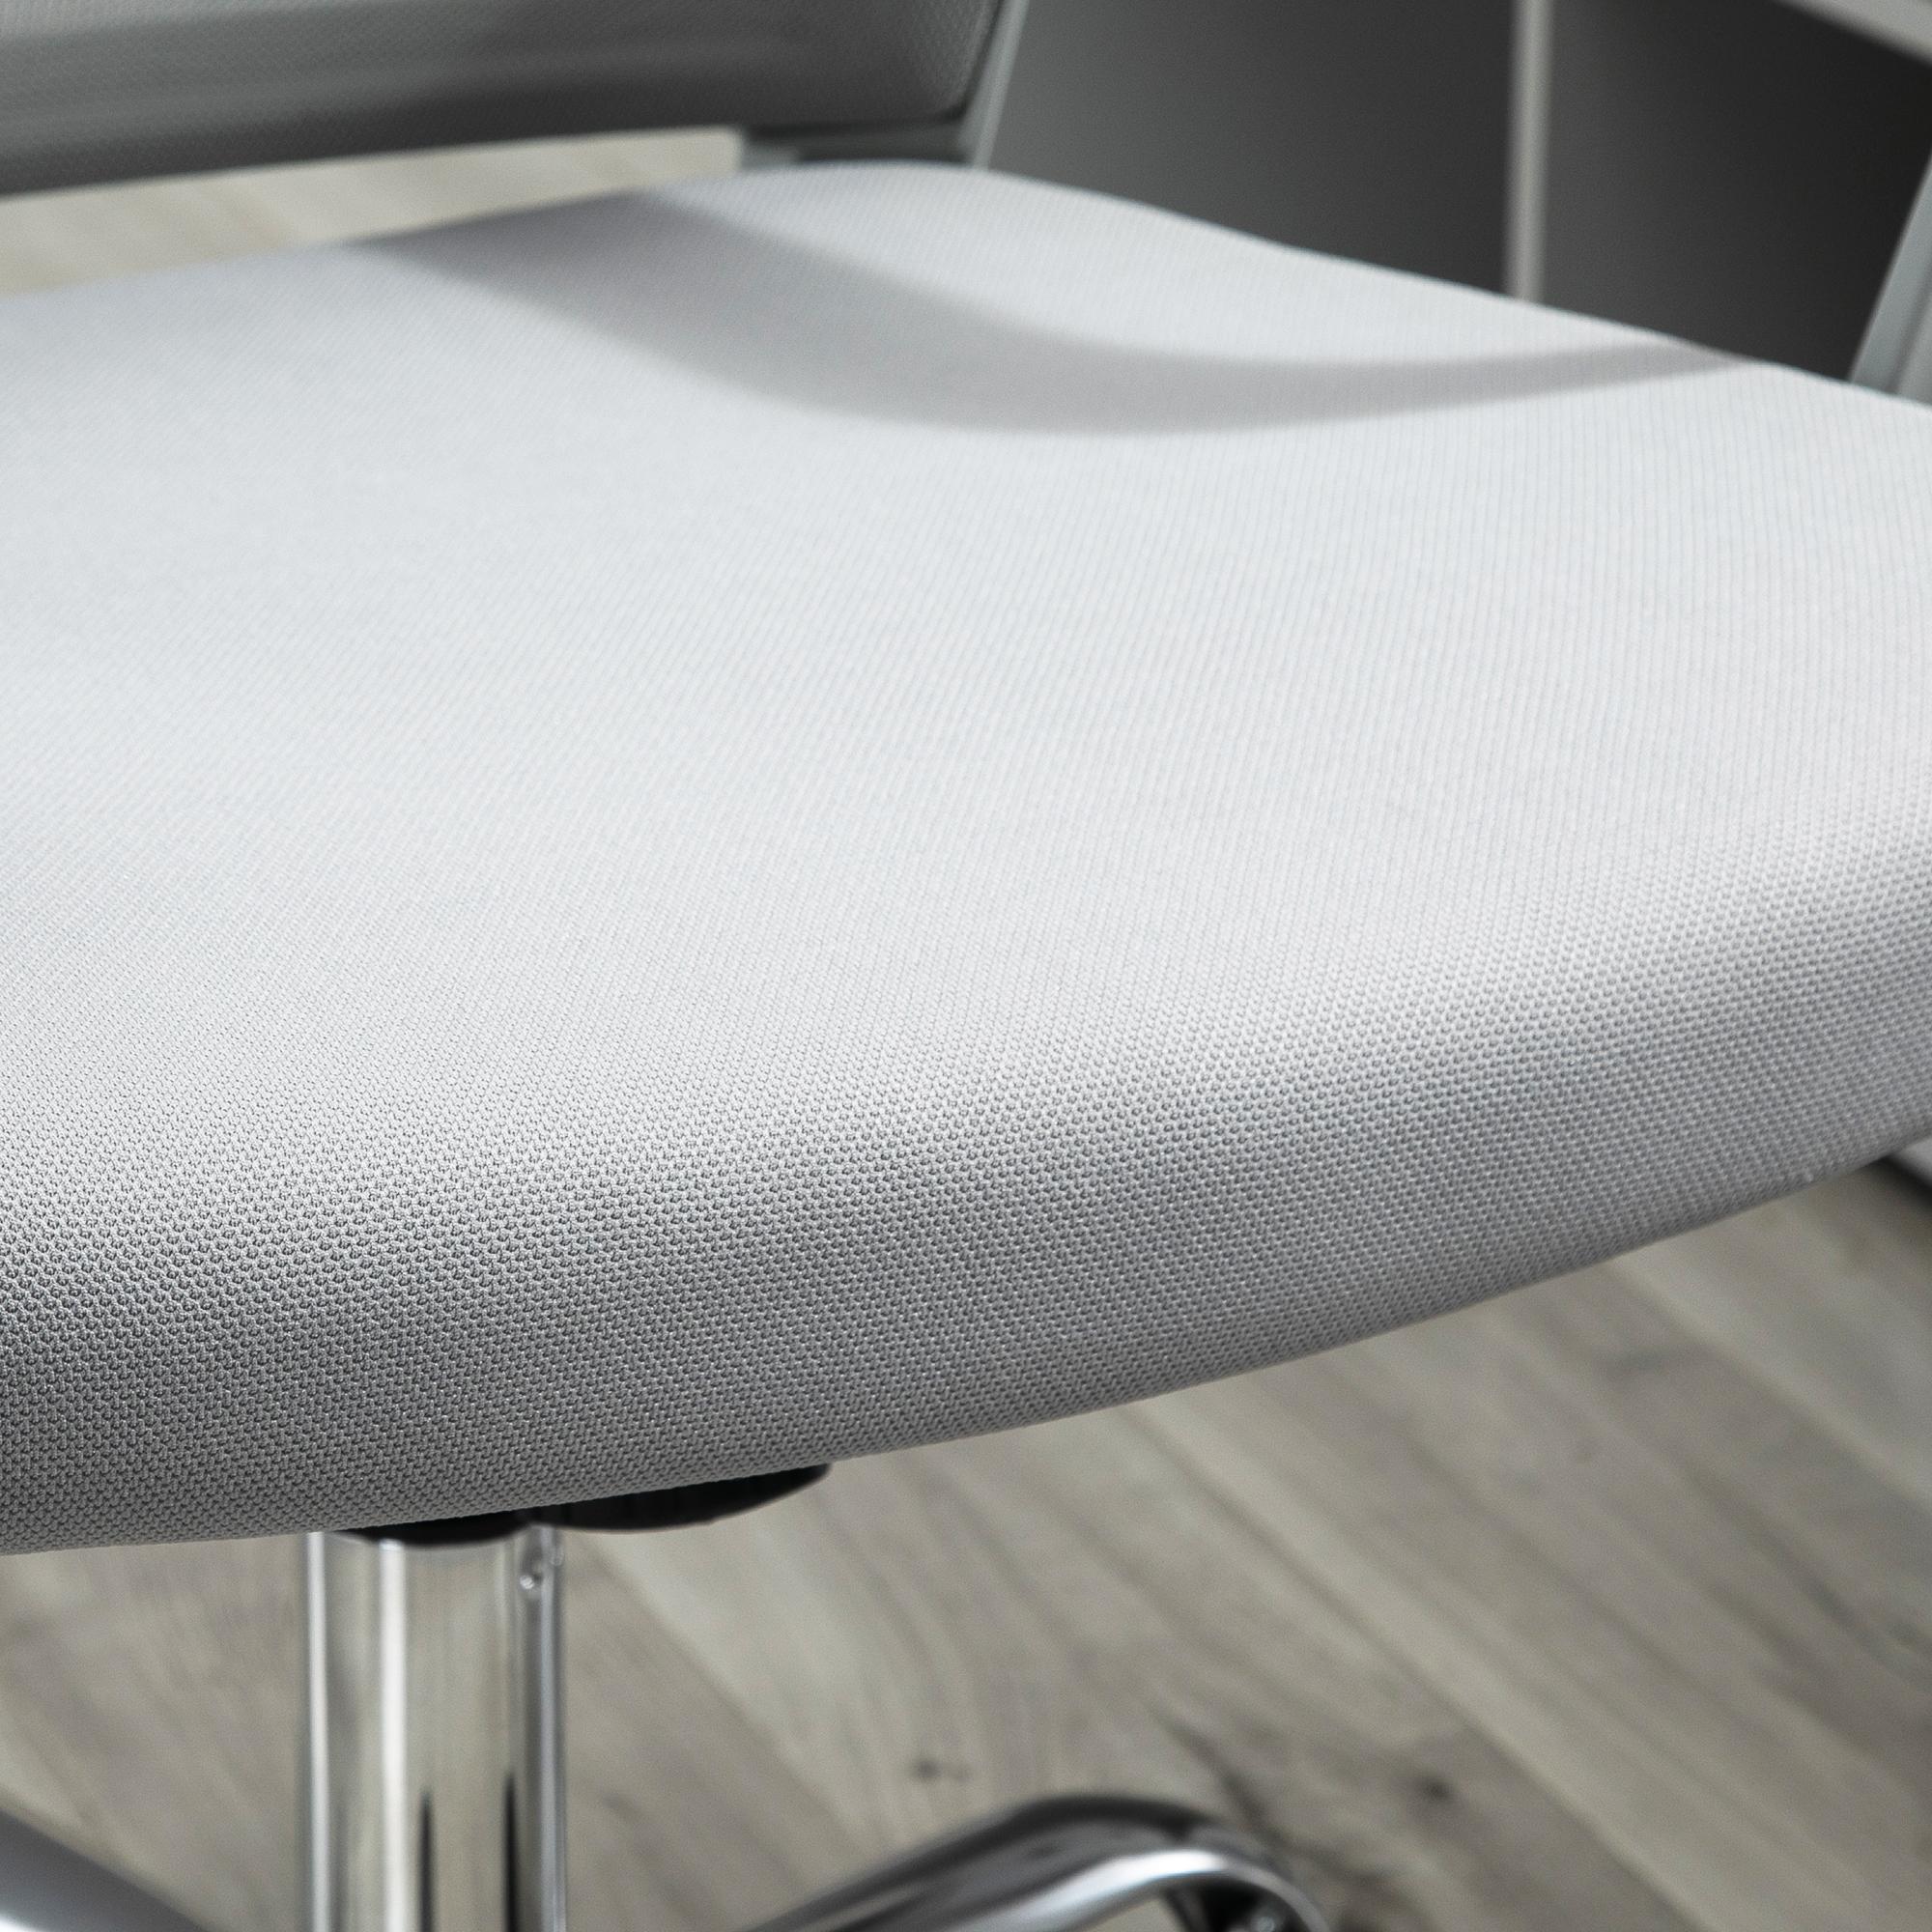 Vinsetto Fauteuil chaise de bureau ergonomique hauteur réglable pivotante 360° revêtement maille gris